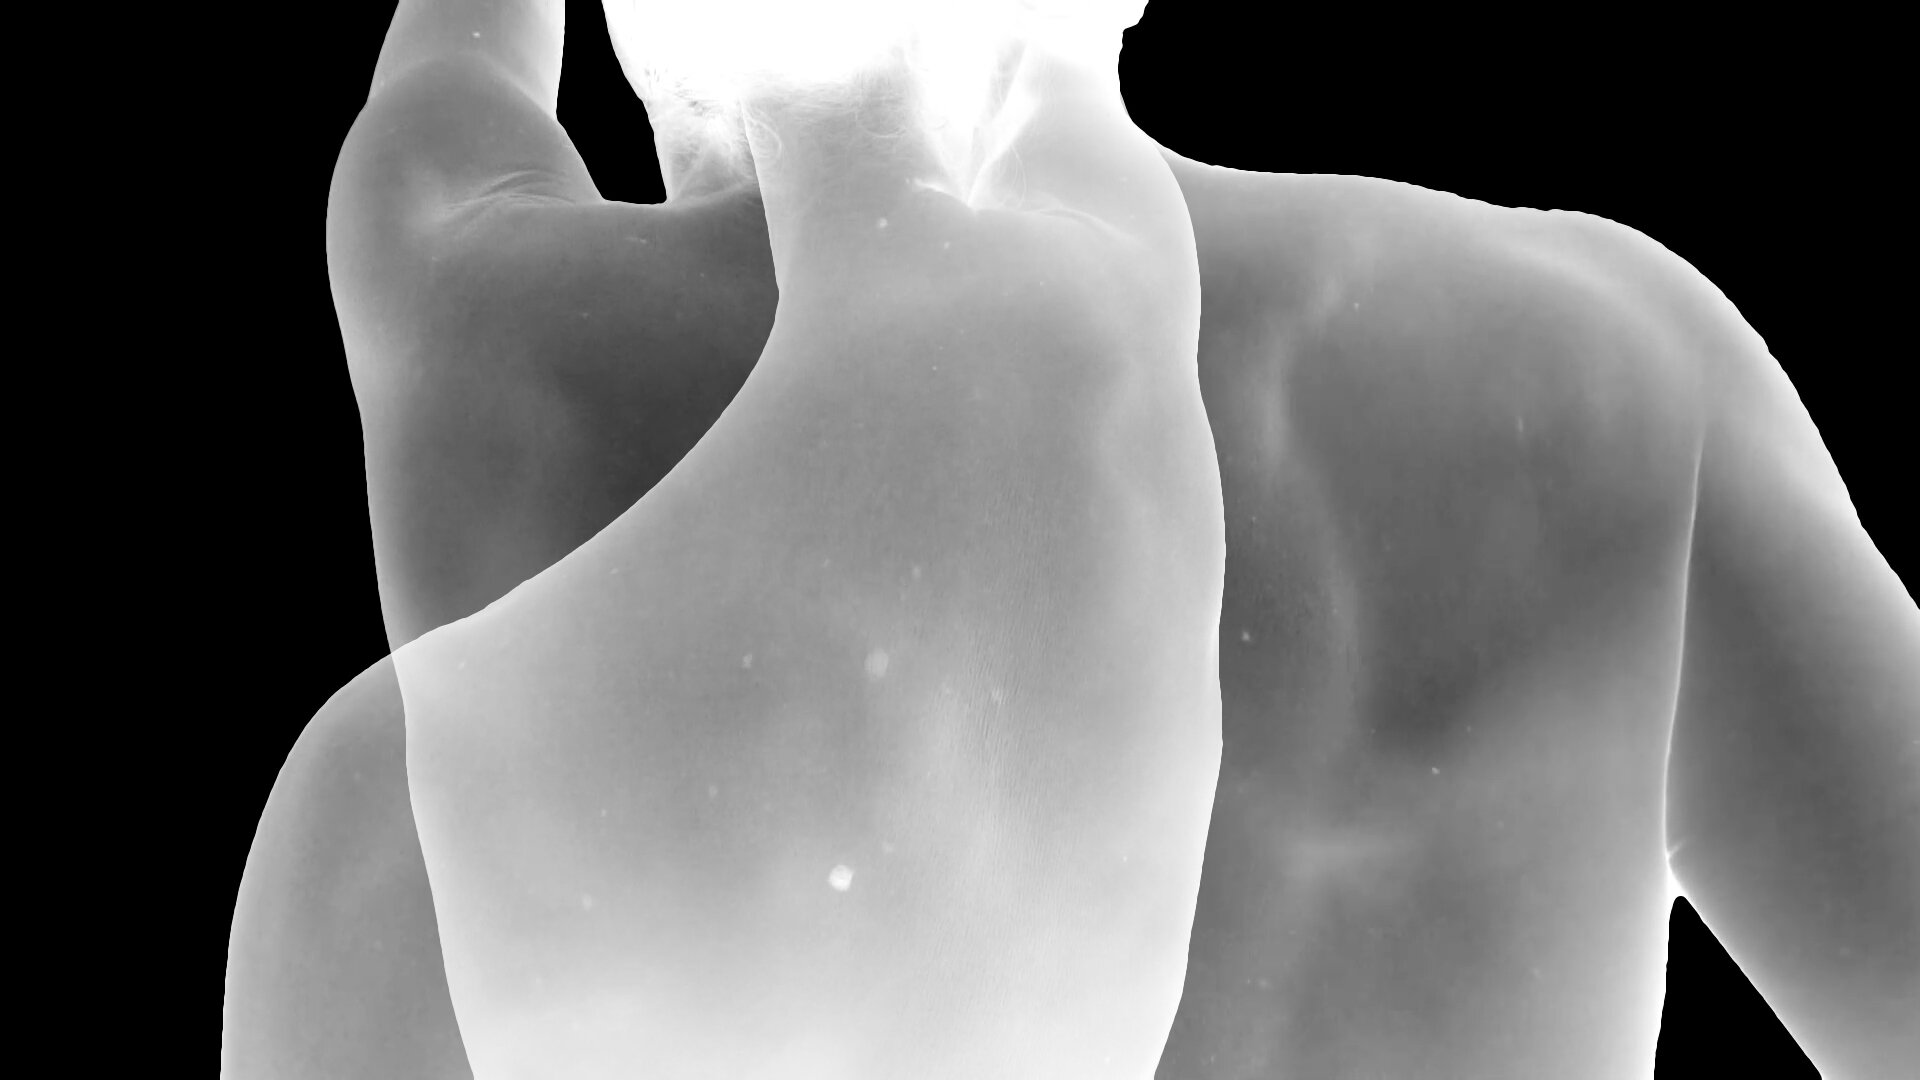 מוביוס אוביוס, פריים מתוך הוידאו "מוביוס אוביוס", 2020